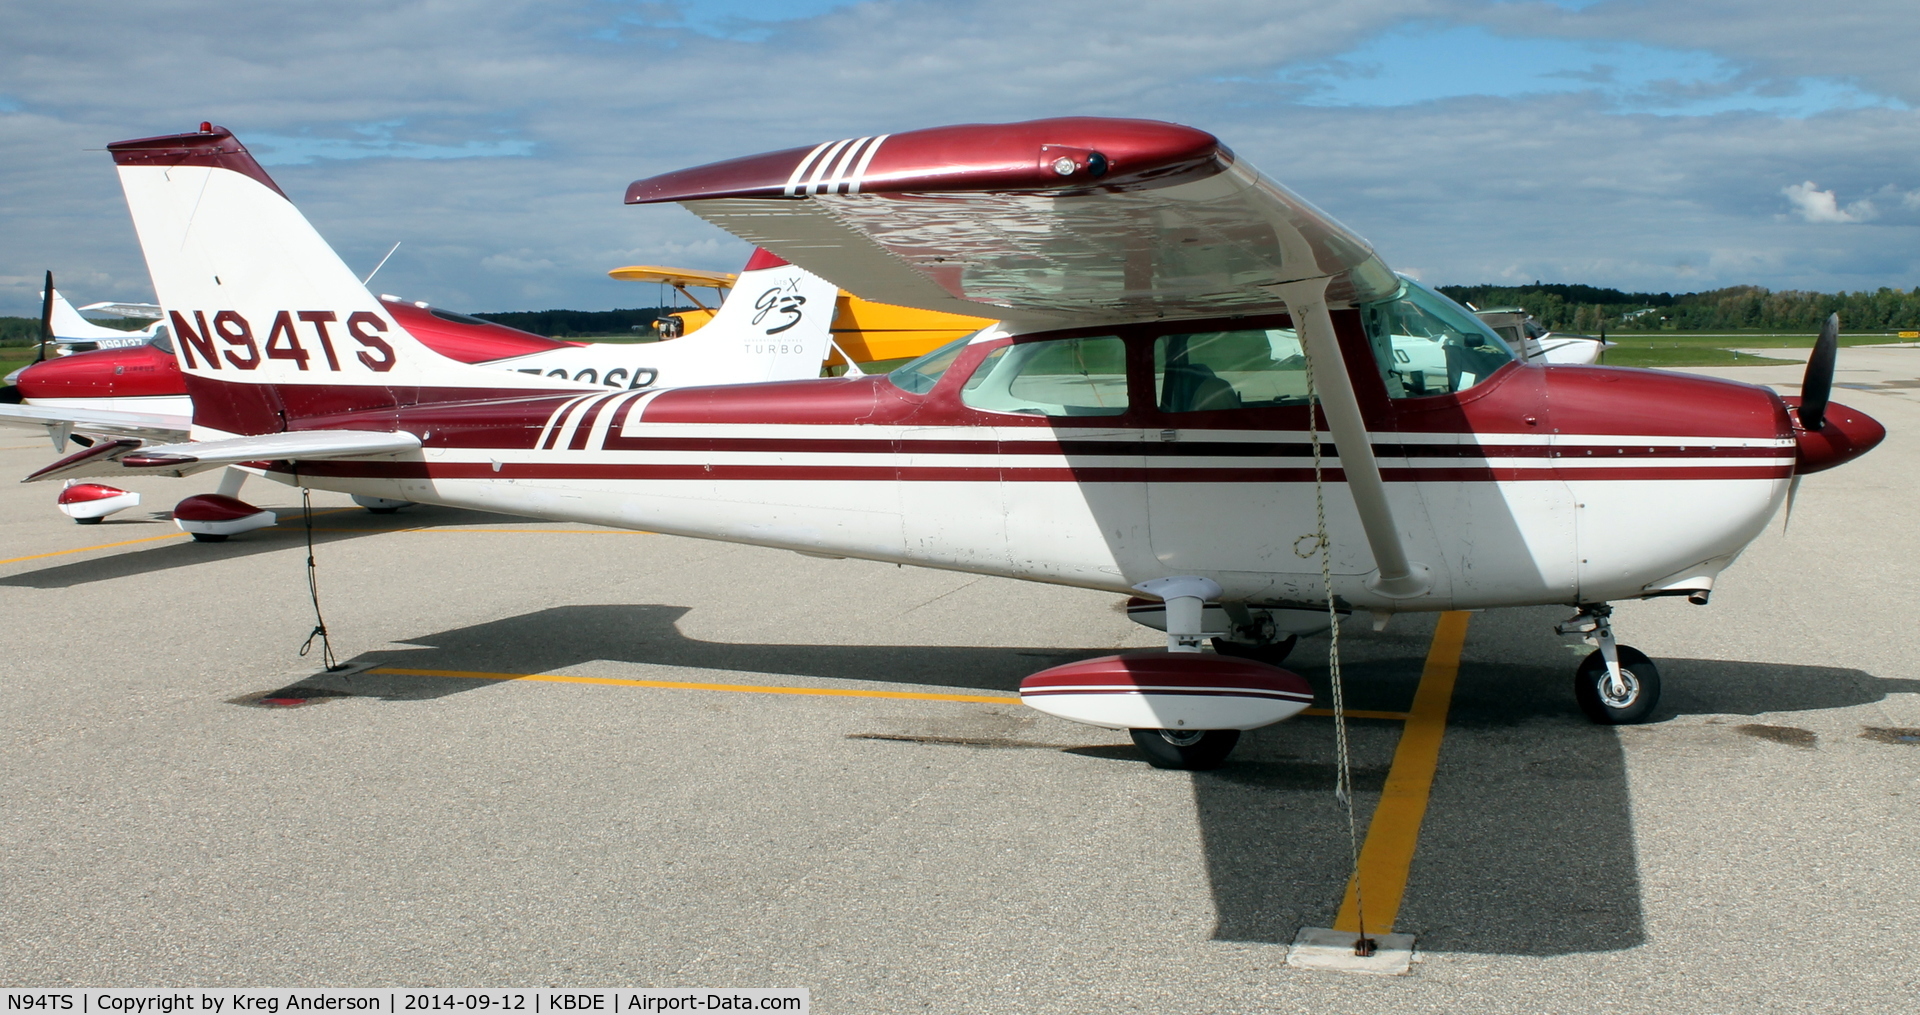 N94TS, 1971 Cessna 172L C/N 17259814, Cessna 172L Skyhawk on the ramp in Baudette, MN.